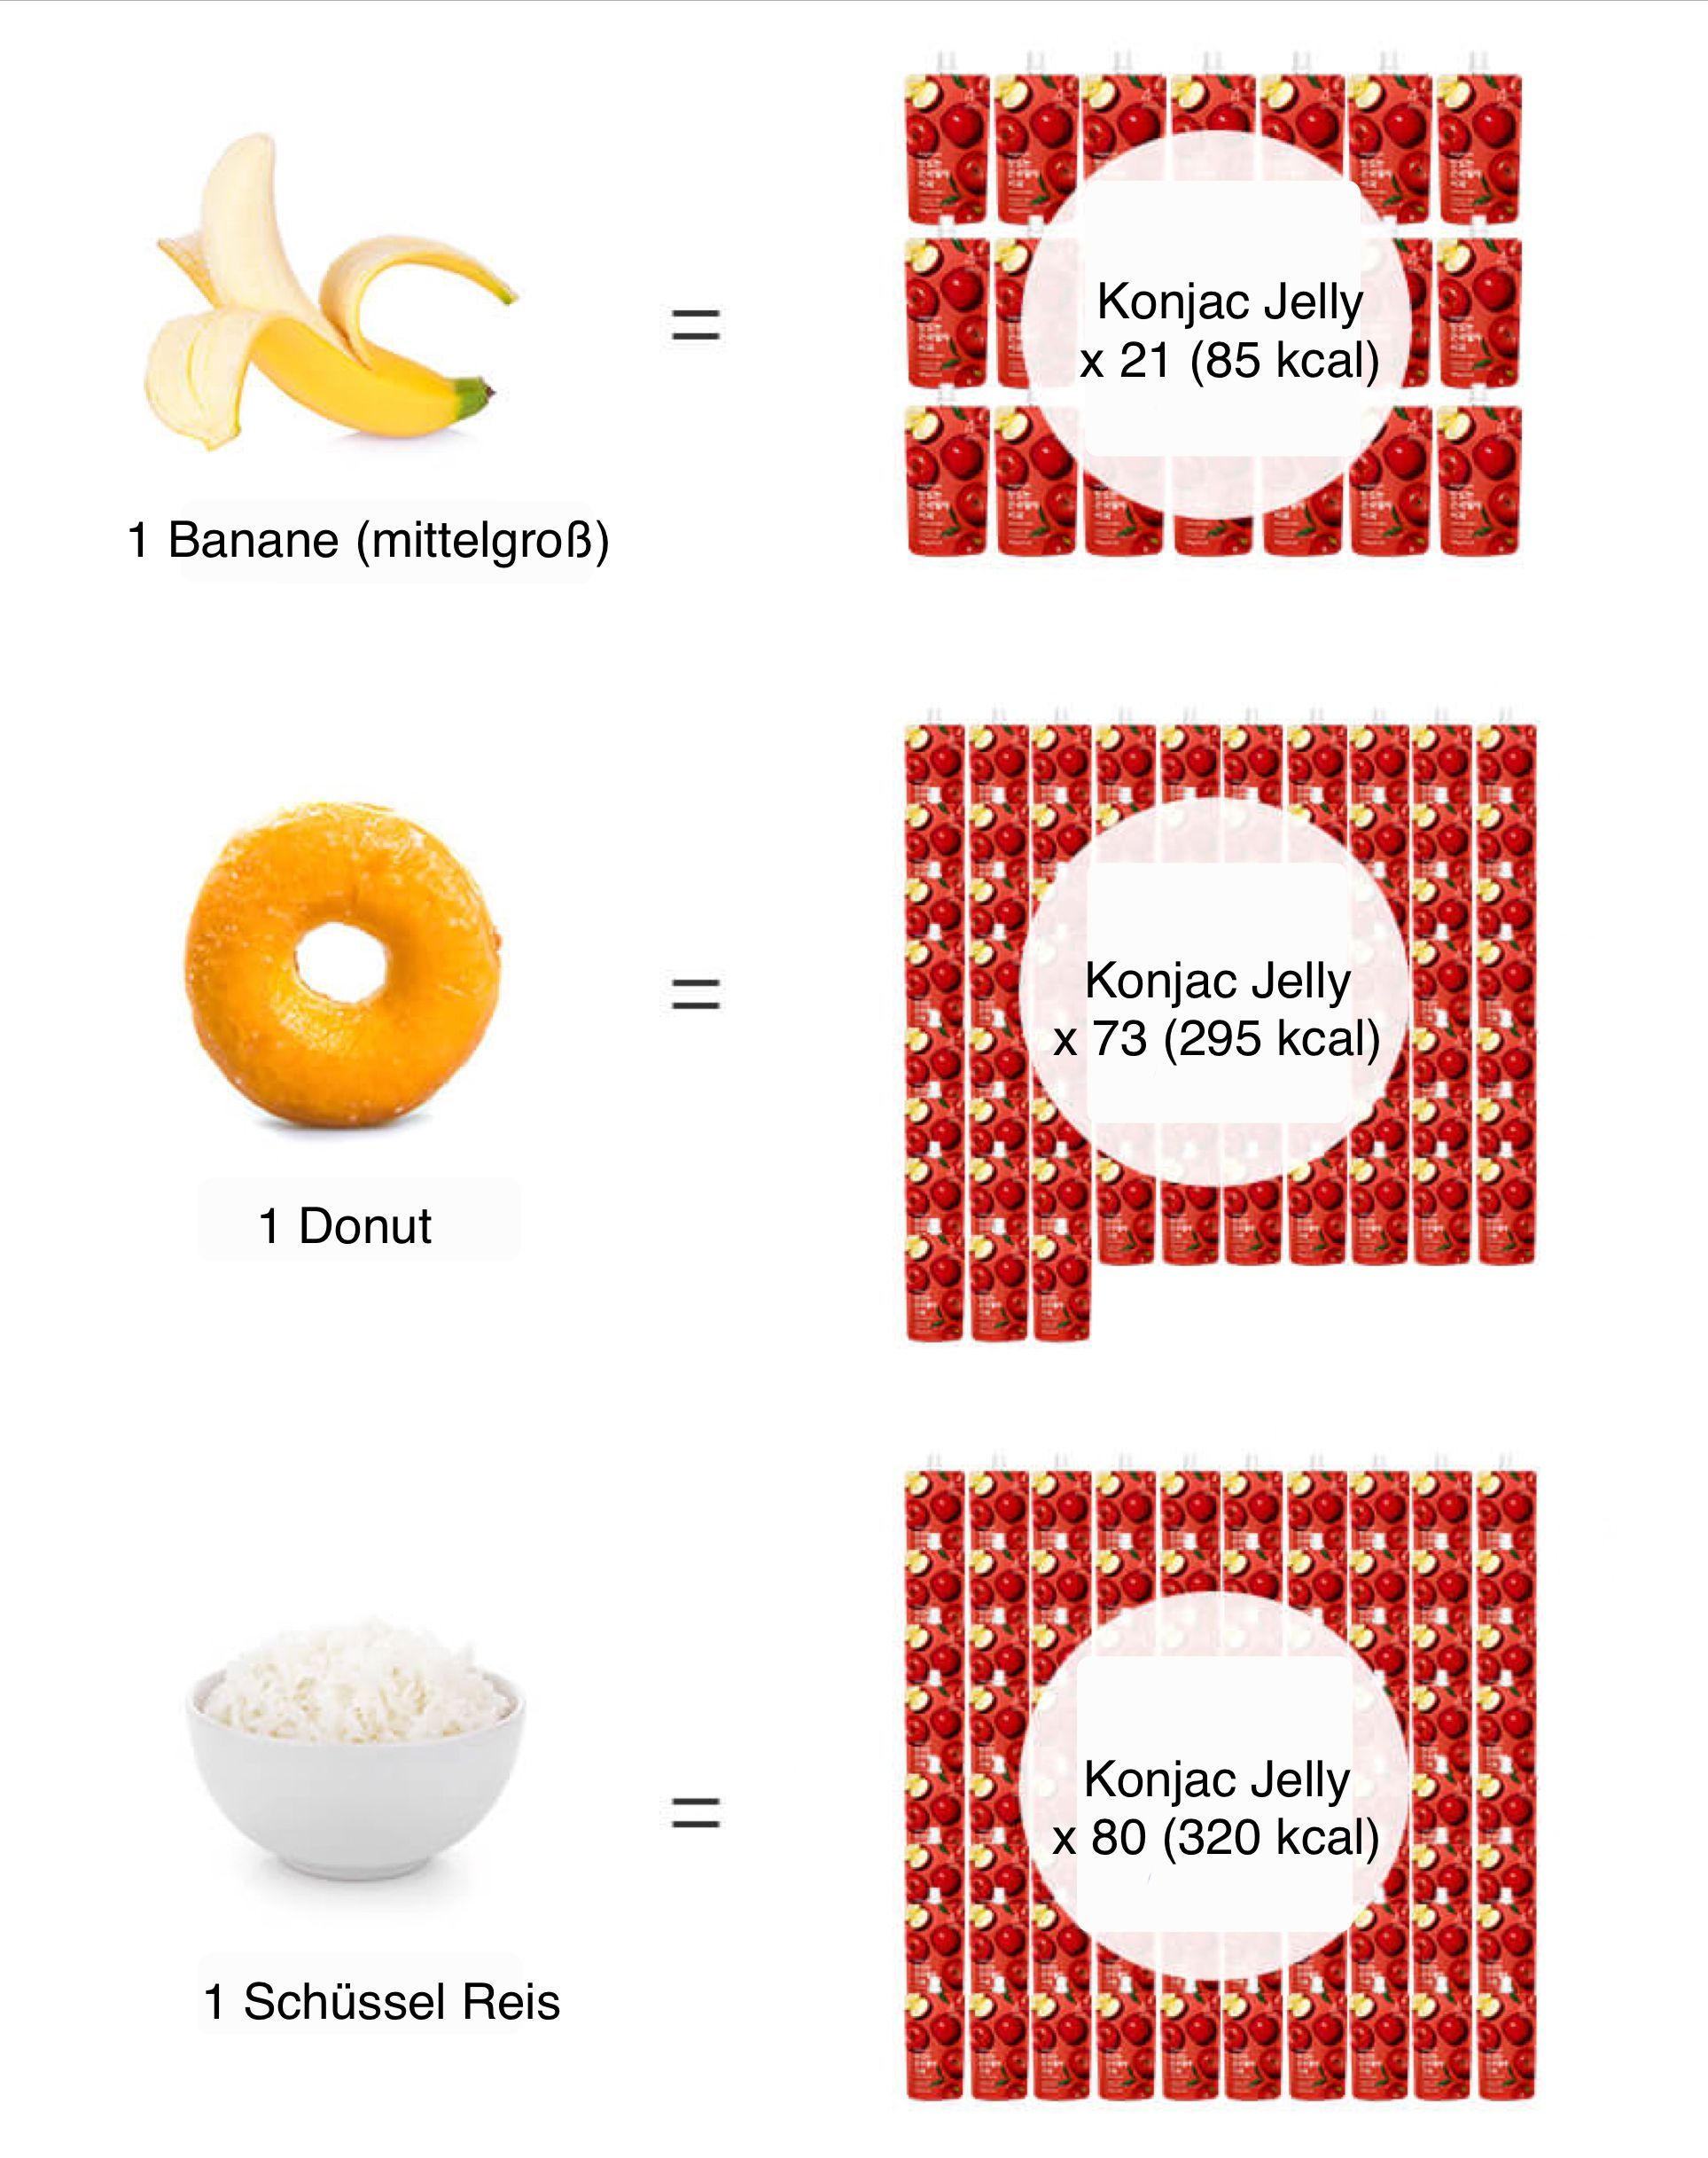 Intake Sugarlolo Konjac Jelly - Kalorien vergleichen 